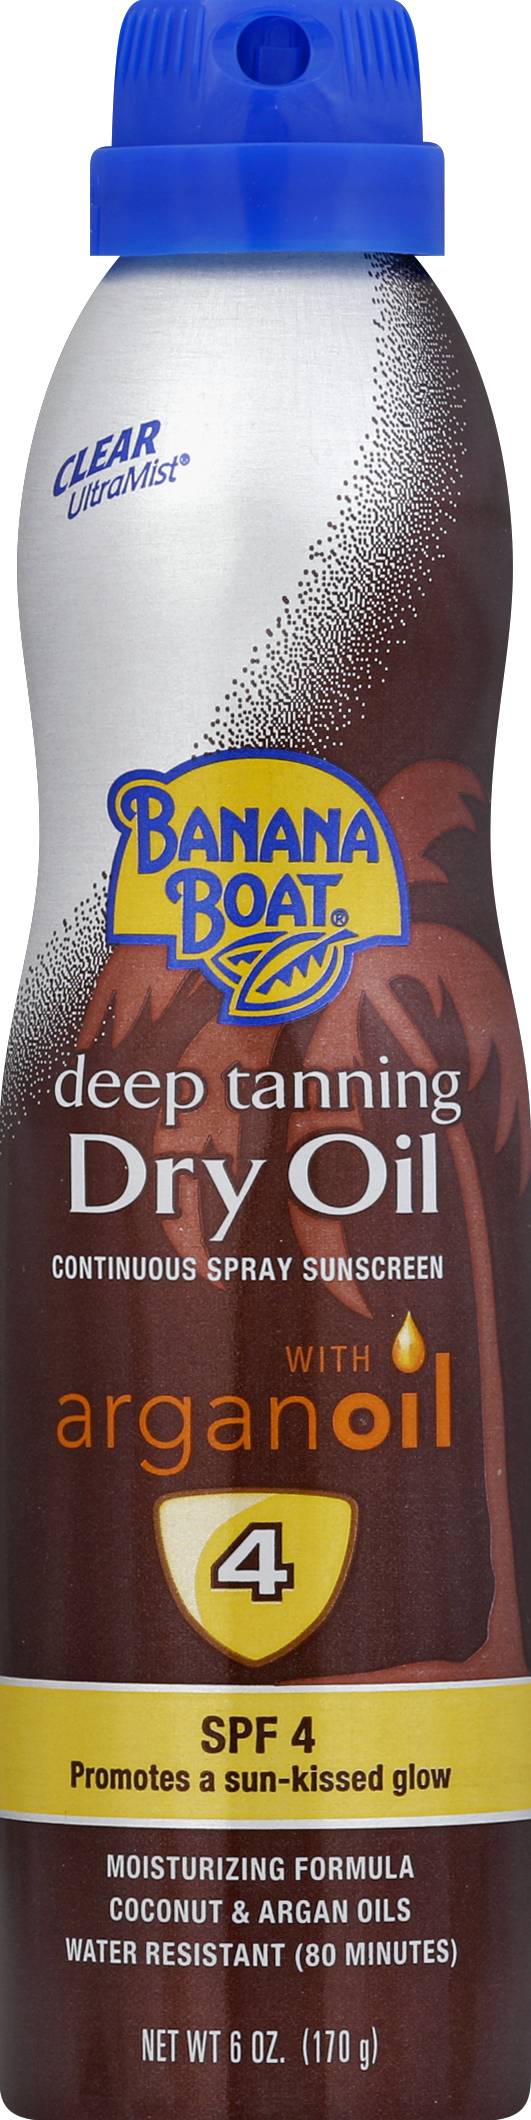 Banana Boat Deep Tanning Dry Oil Sun Care Sunscreen Spray